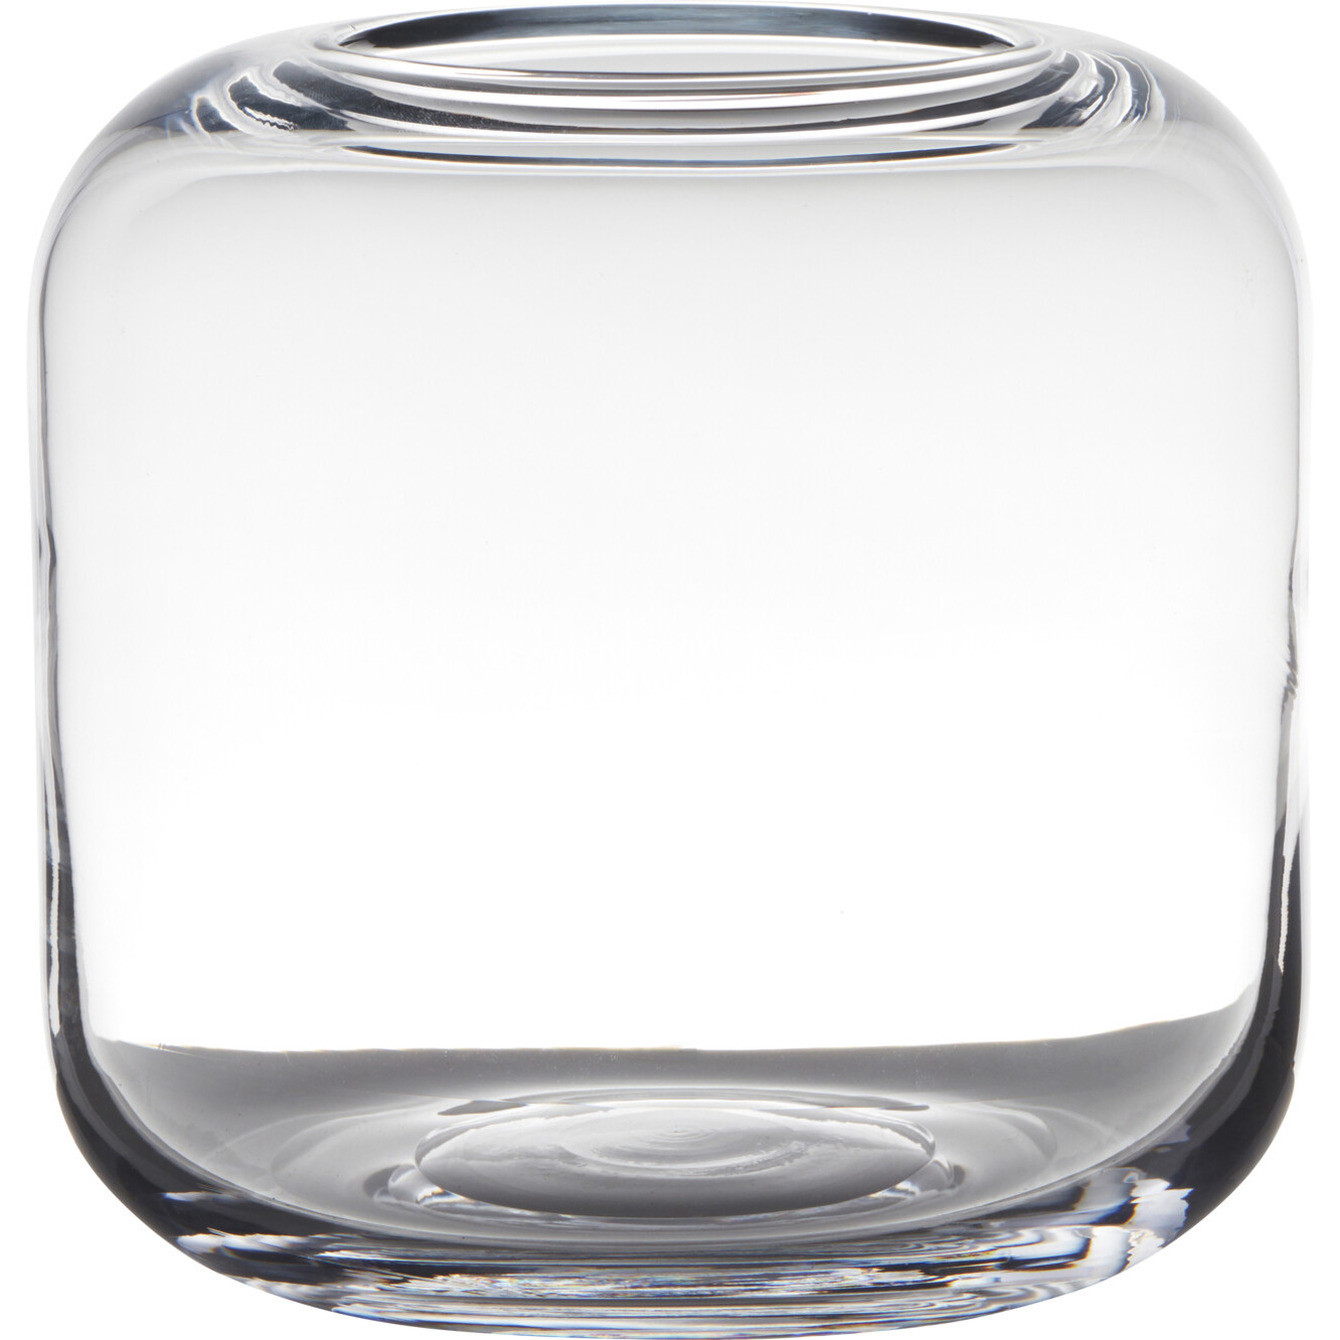 Transparante ronde vaas-vazen van glas 21 x 21 cm